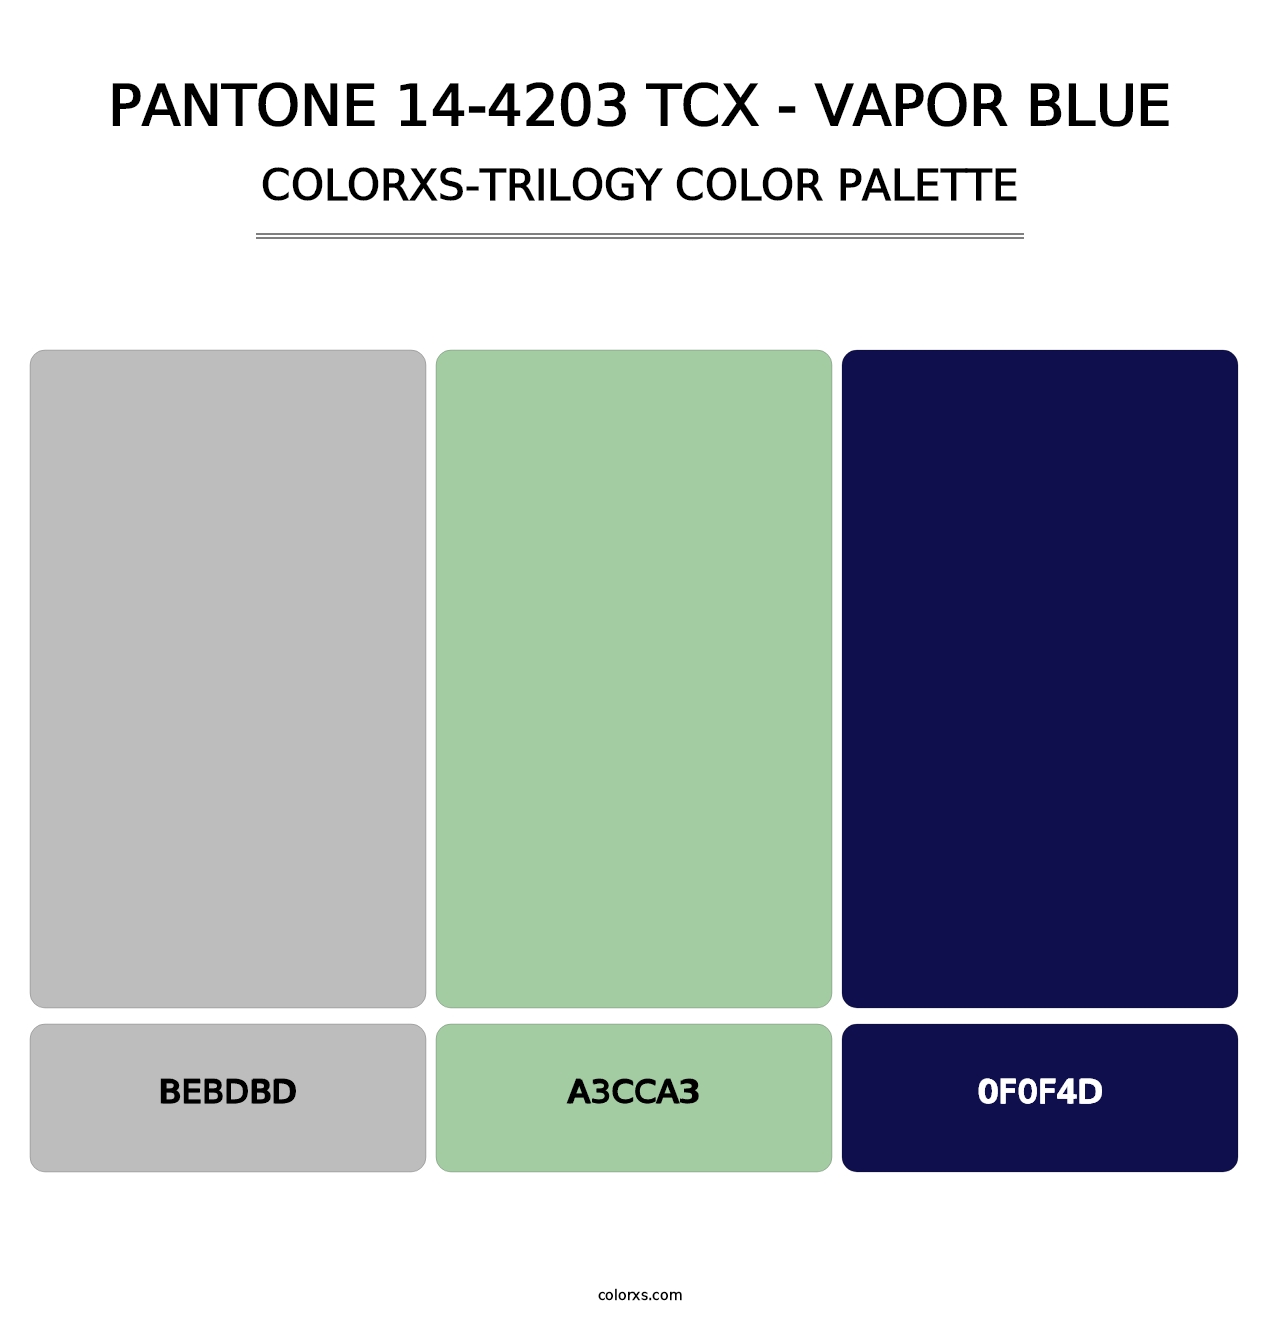 PANTONE 14-4203 TCX - Vapor Blue - Colorxs Trilogy Palette